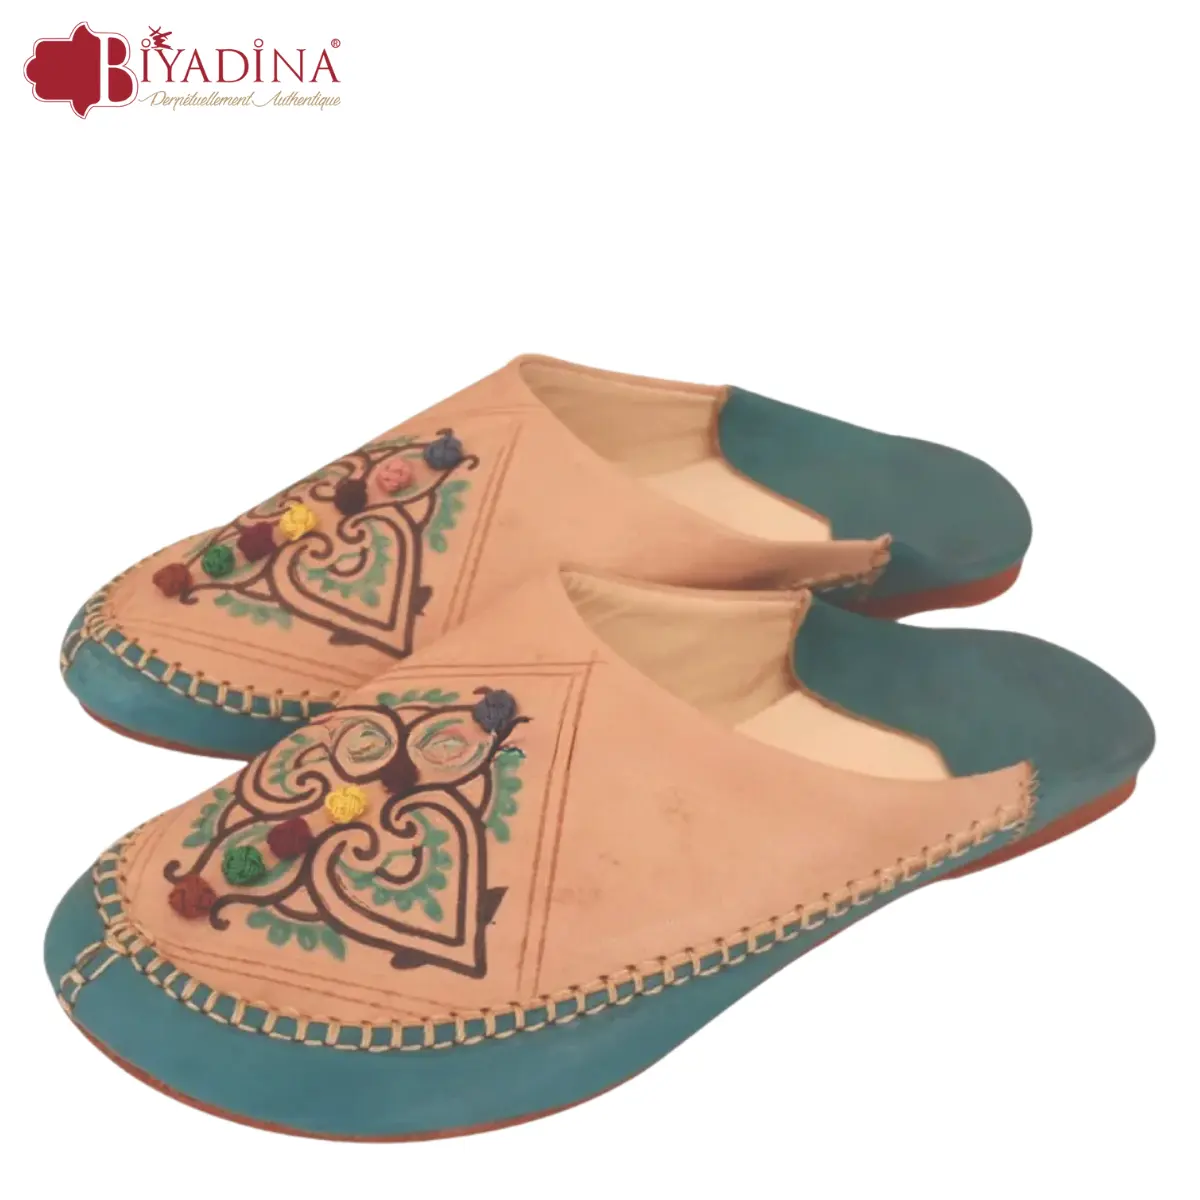 Pantufa feminina colorida de couro de designe, sapatos oriental tradicionais de couro do marrocos